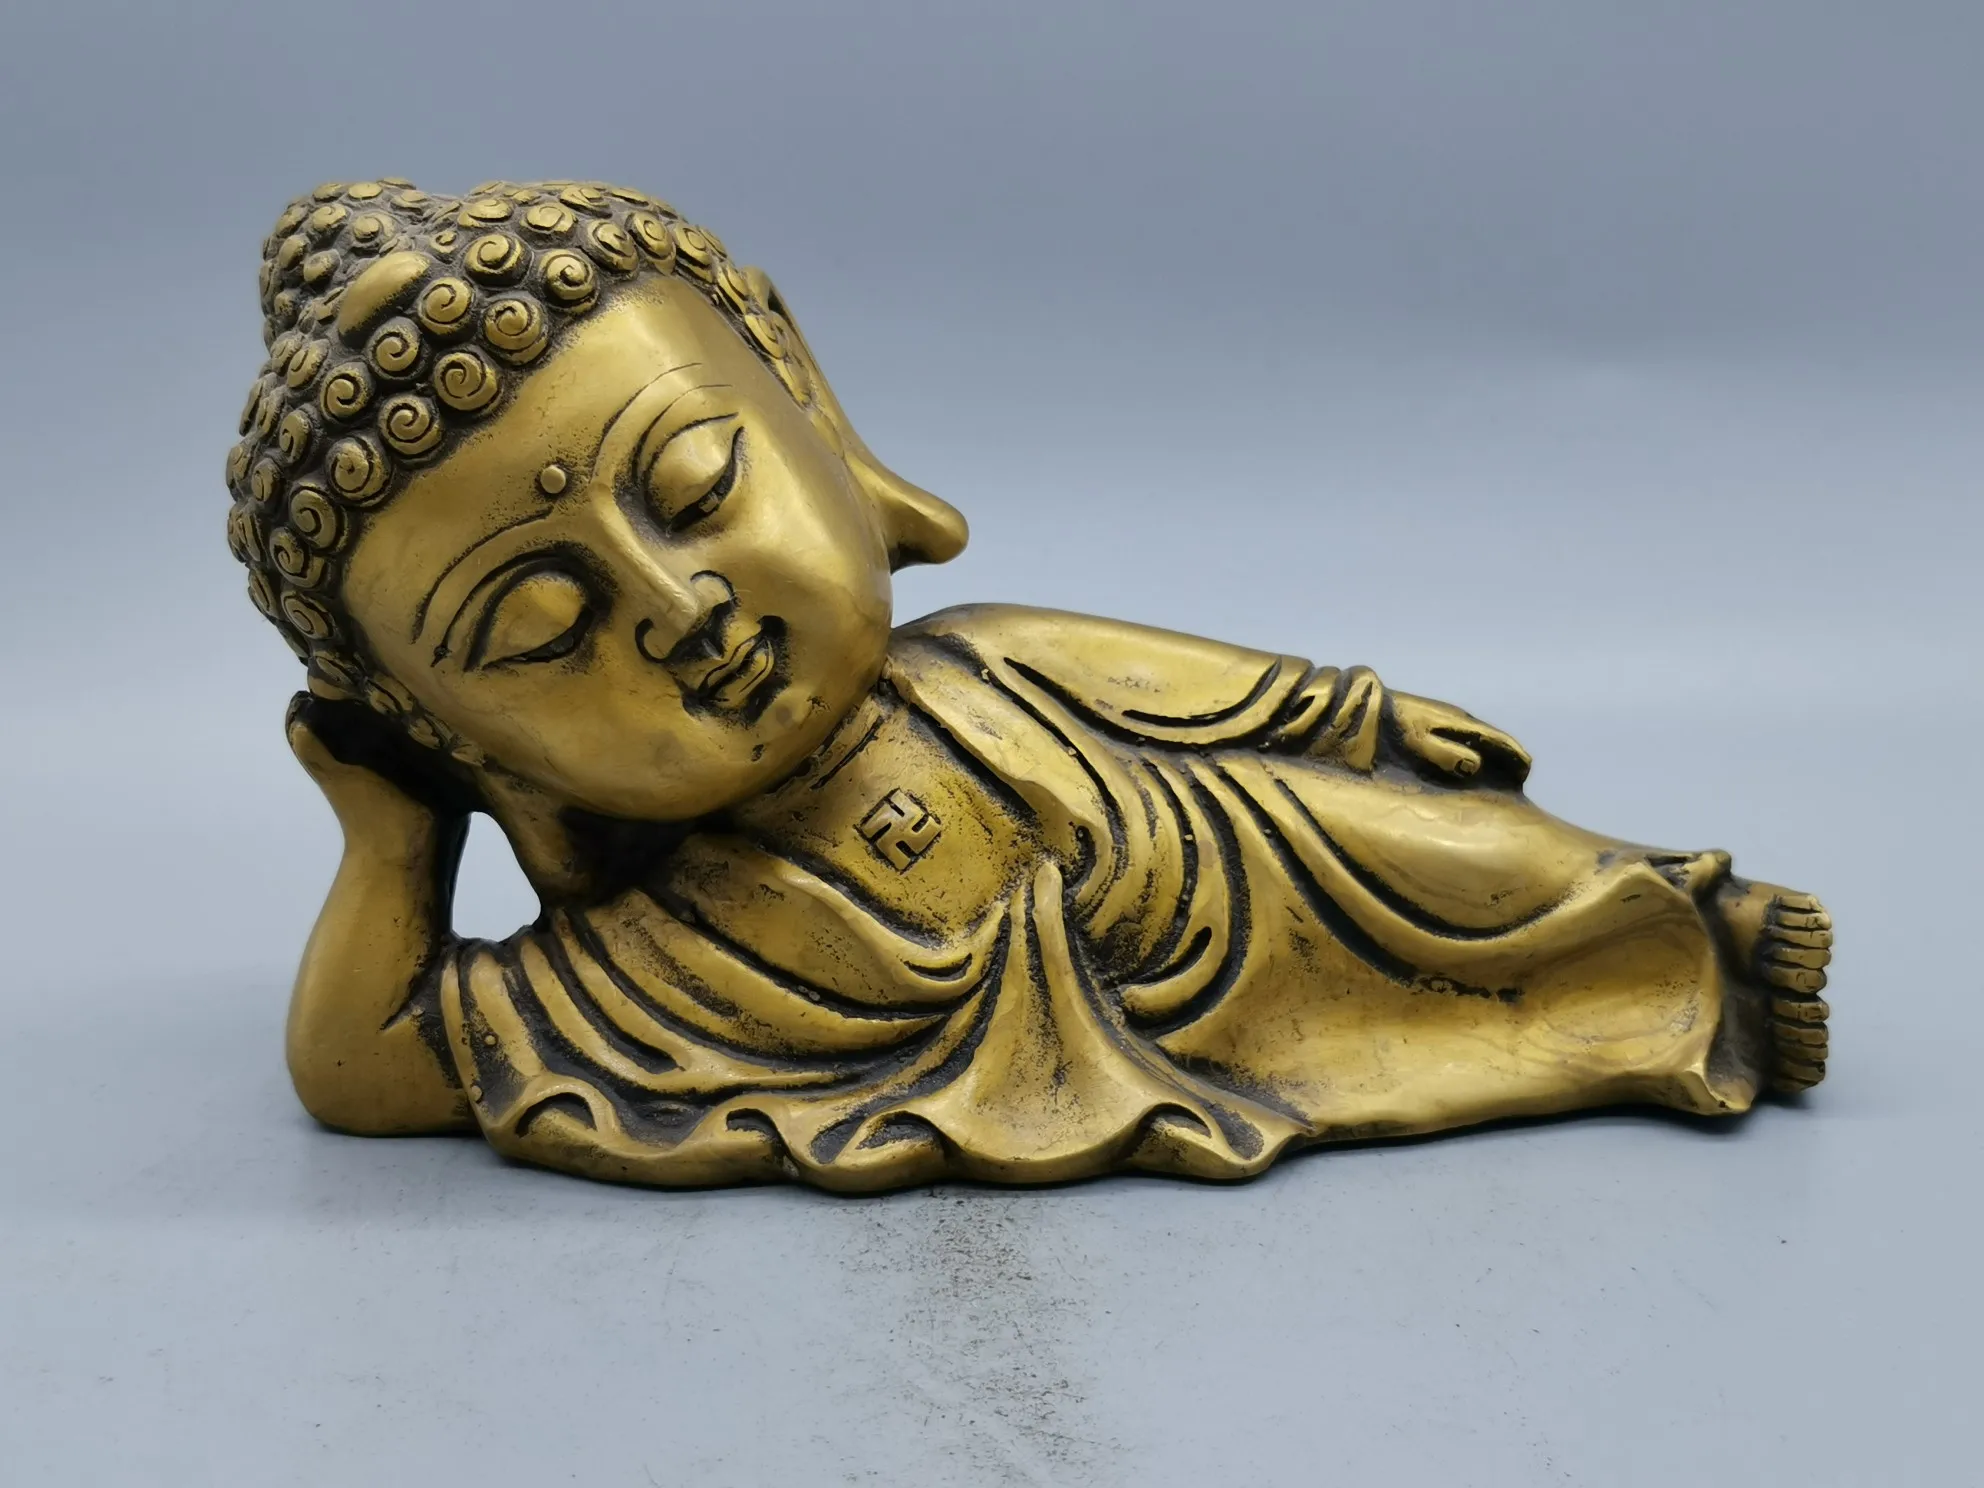 

Китайская Спящая Будда Шакьямуни, буддийский монах, статуя из чистой меди, Настольная коллекция, резное сокровище, талисман фэн-шуй